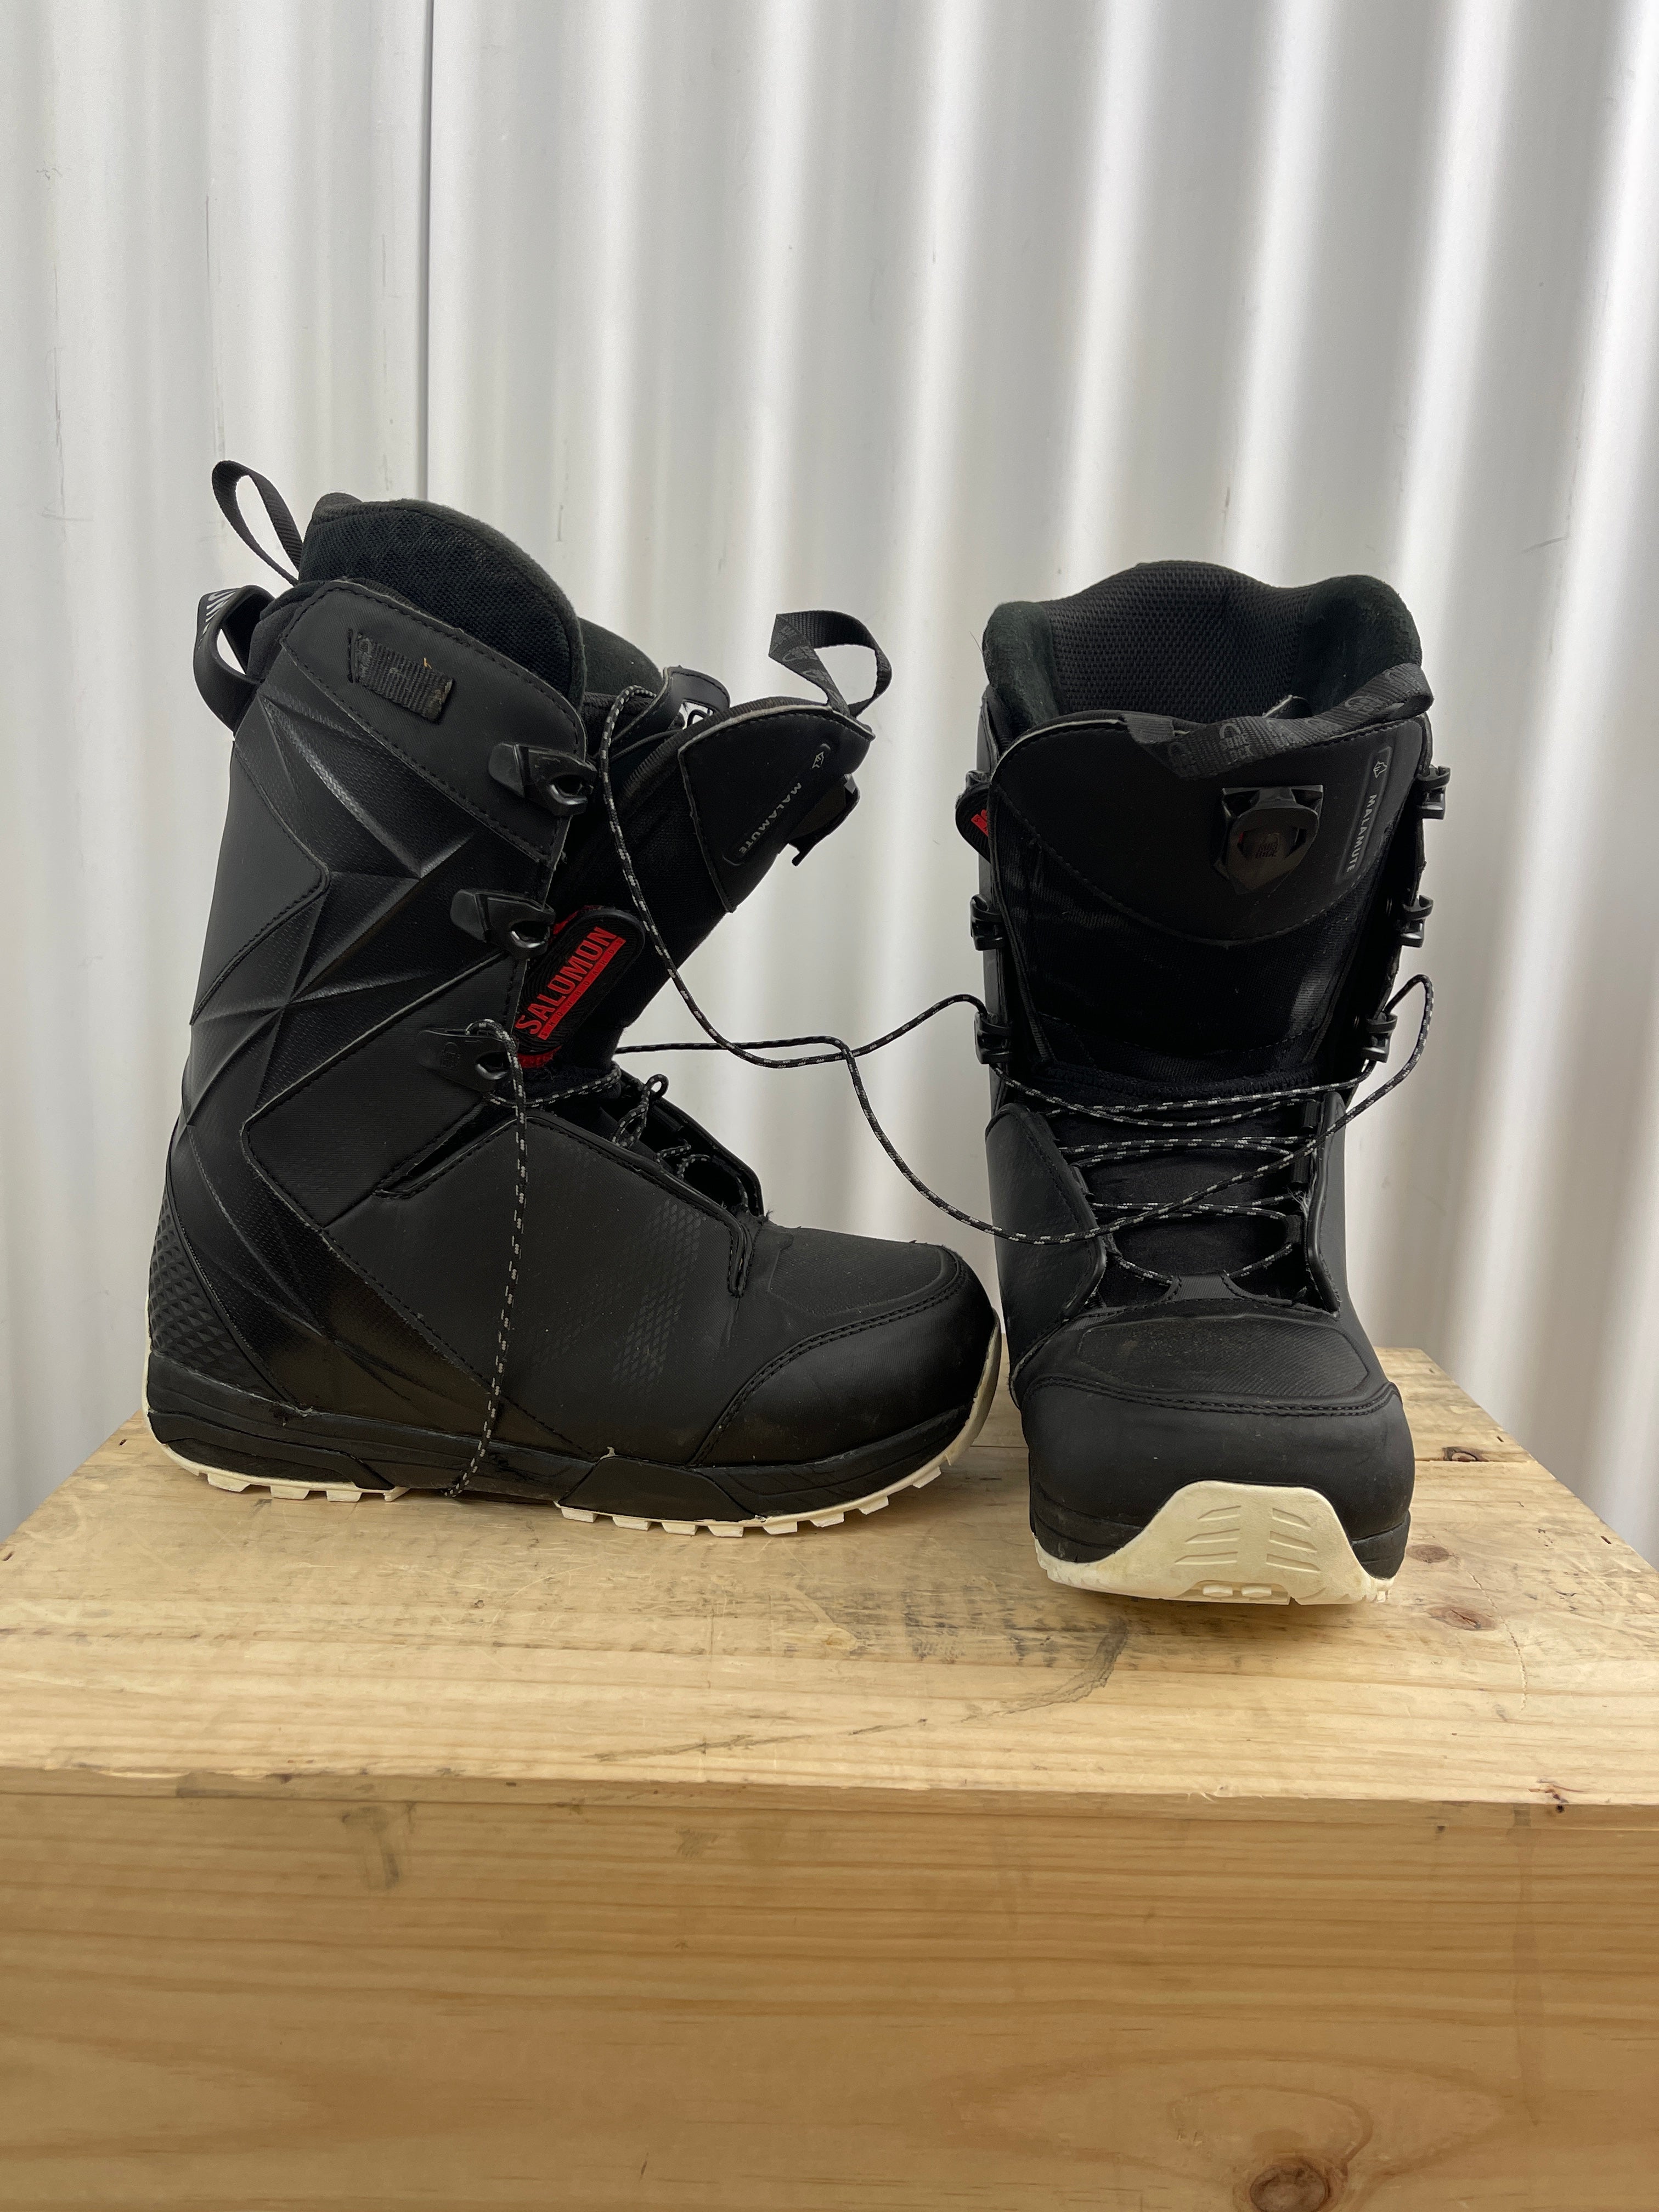 Salomon Malamute snowboard boots – The Locals Sale